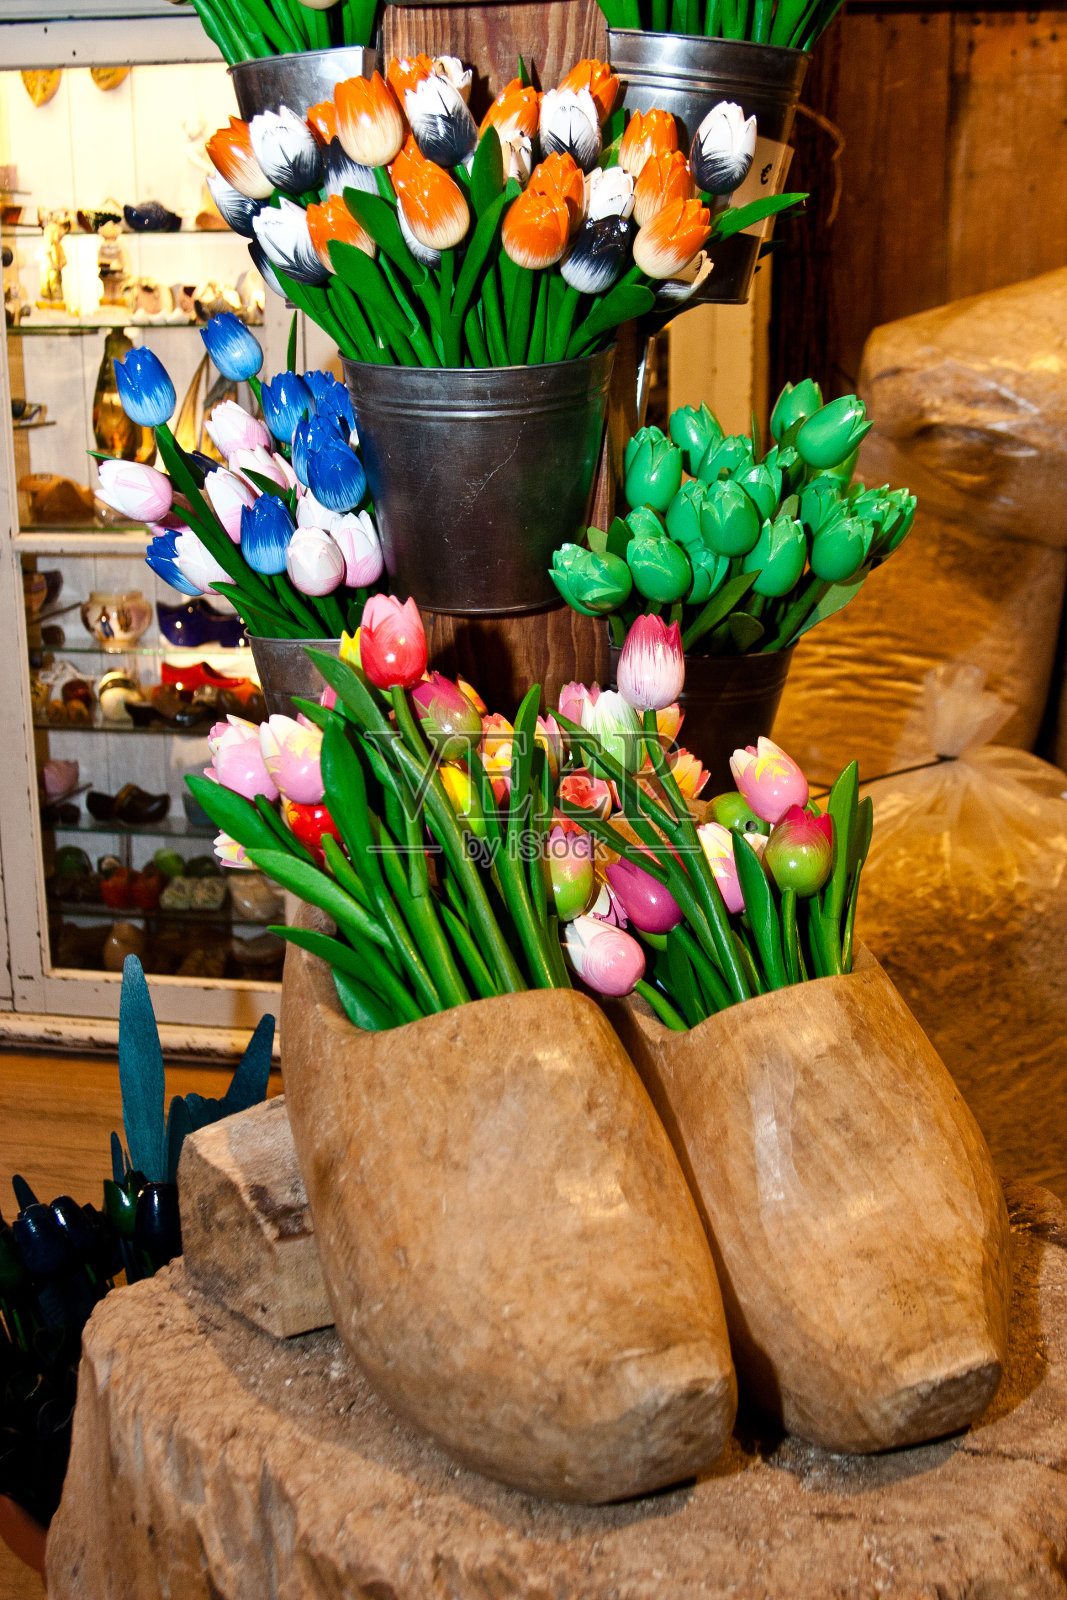 典型的荷兰木鞋和郁金香照片摄影图片